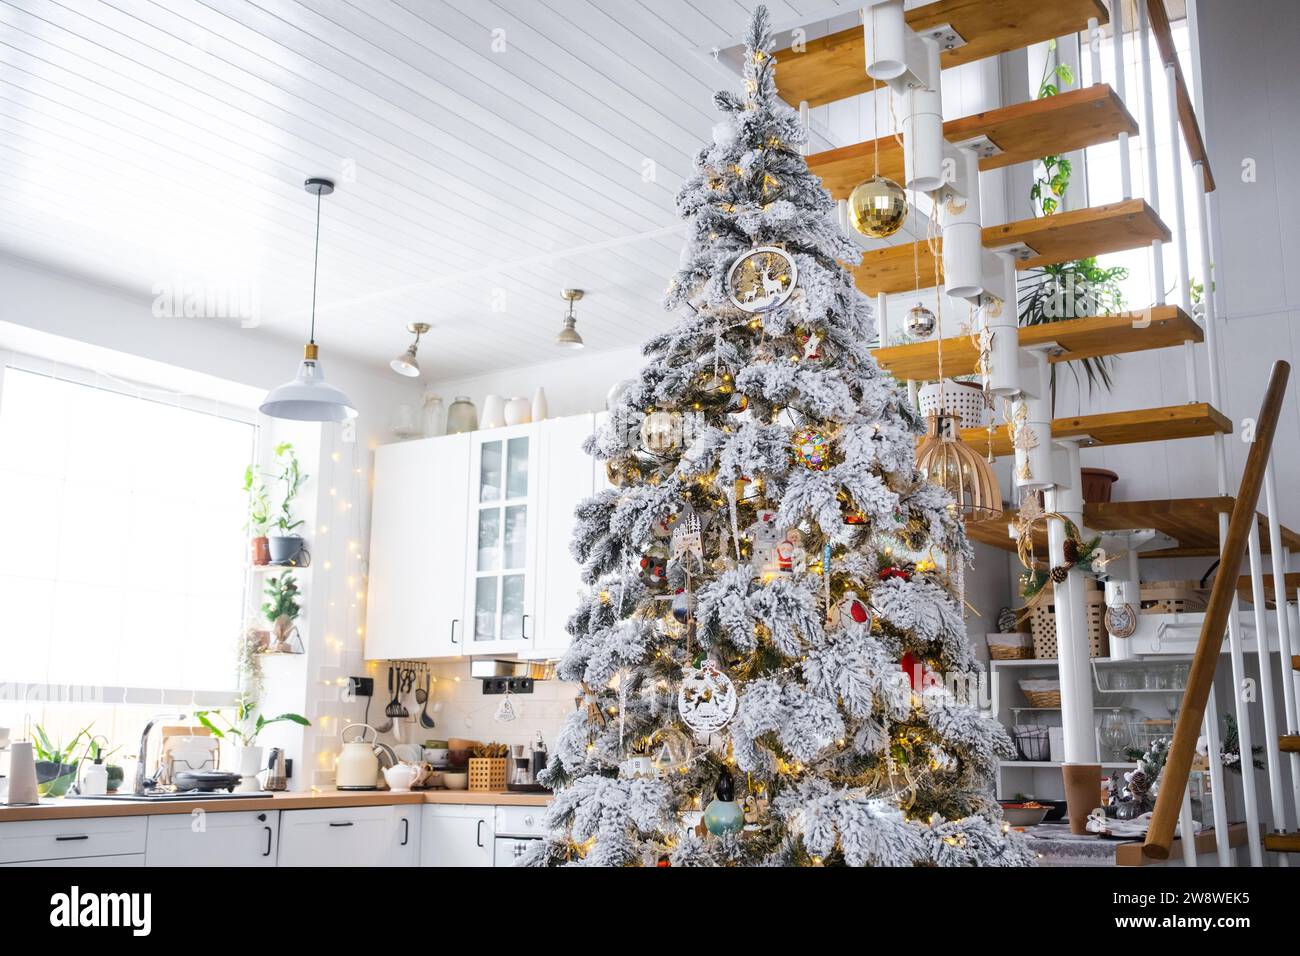 Decorazioni natalizie natalizie in cucina bianca, interni moderni del villaggio con un albero di Natale innevato e luci delle fate. Capodanno, atmosfera natalizia, casa accogliente, M Foto Stock